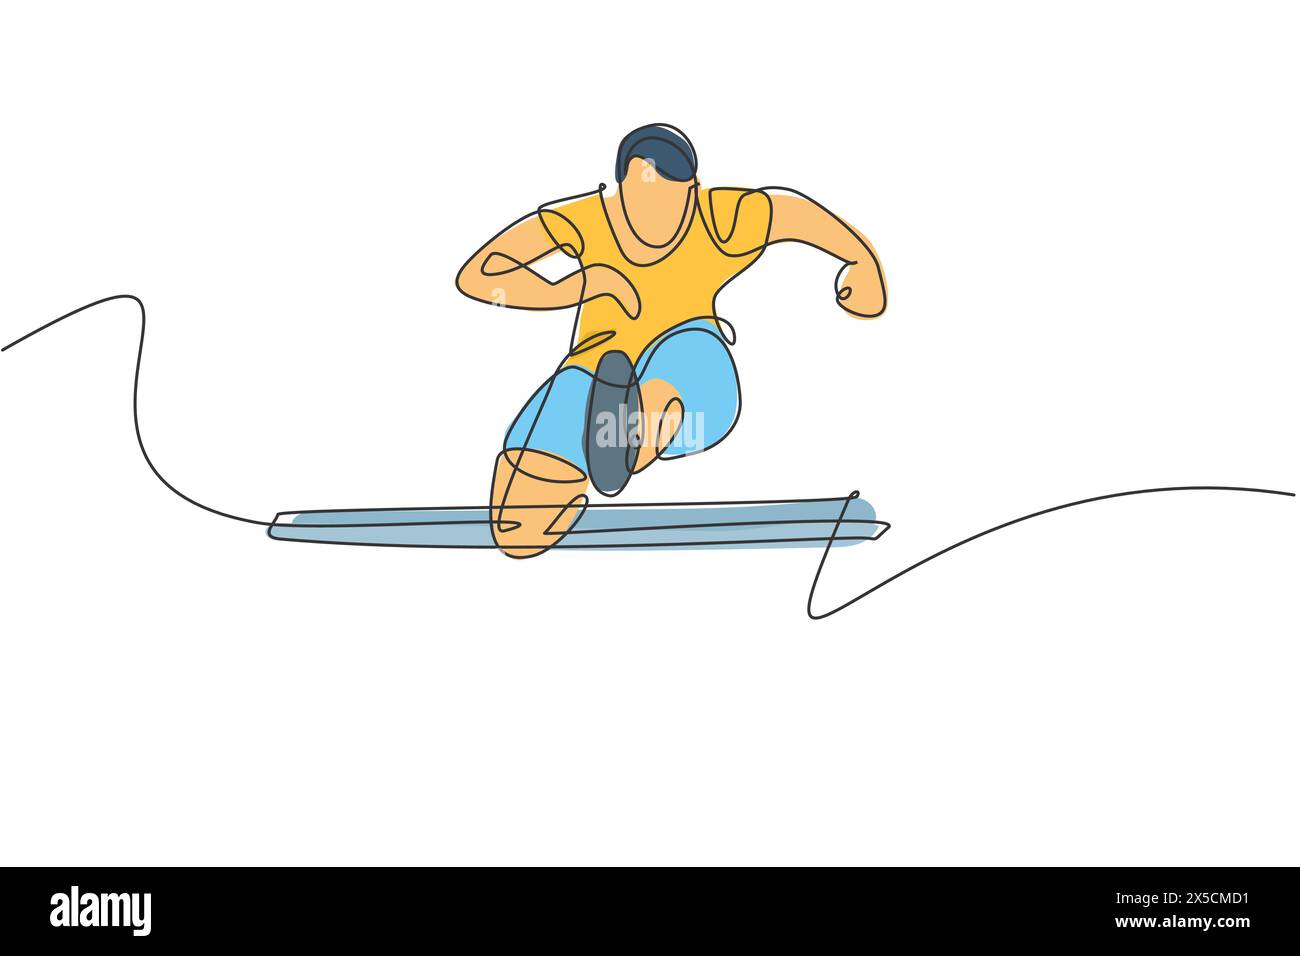 Un dessin en ligne continue de jeune homme sportif sautant obstacle pendant la course. Concept de sport d'activité de santé. Conception de dessin de ligne unique dynamique Illustration de Vecteur